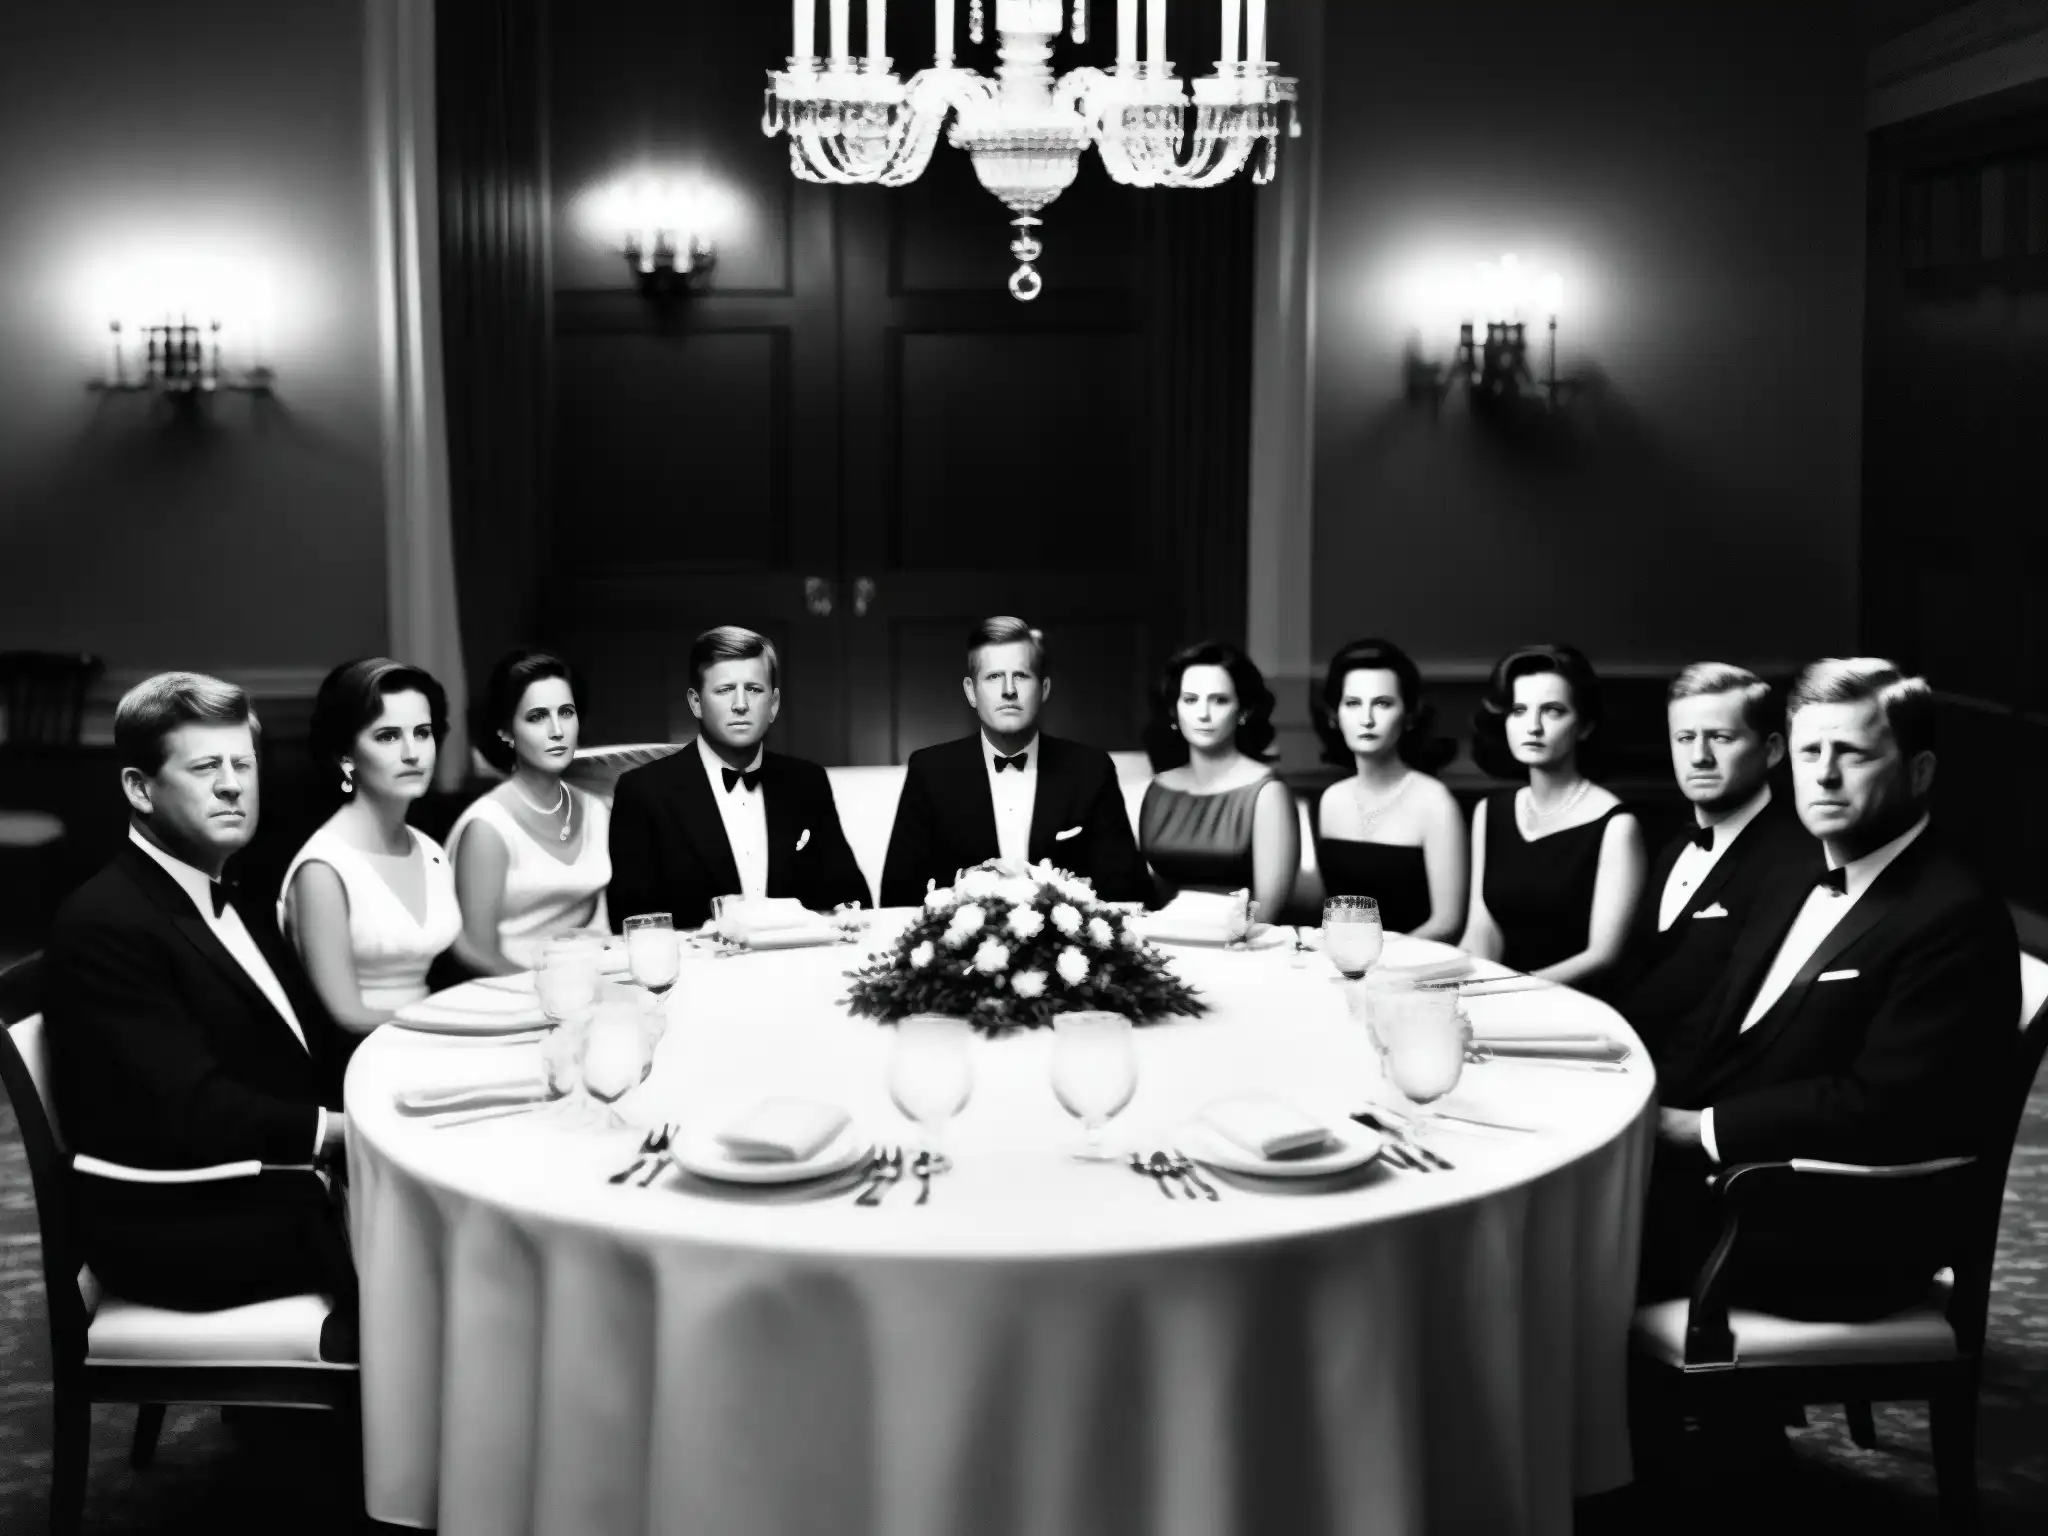 Foto en blanco y negro de la familia Kennedy en una cena formal, con expresiones serias y sillas vacías que simbolizan miembros perdidos